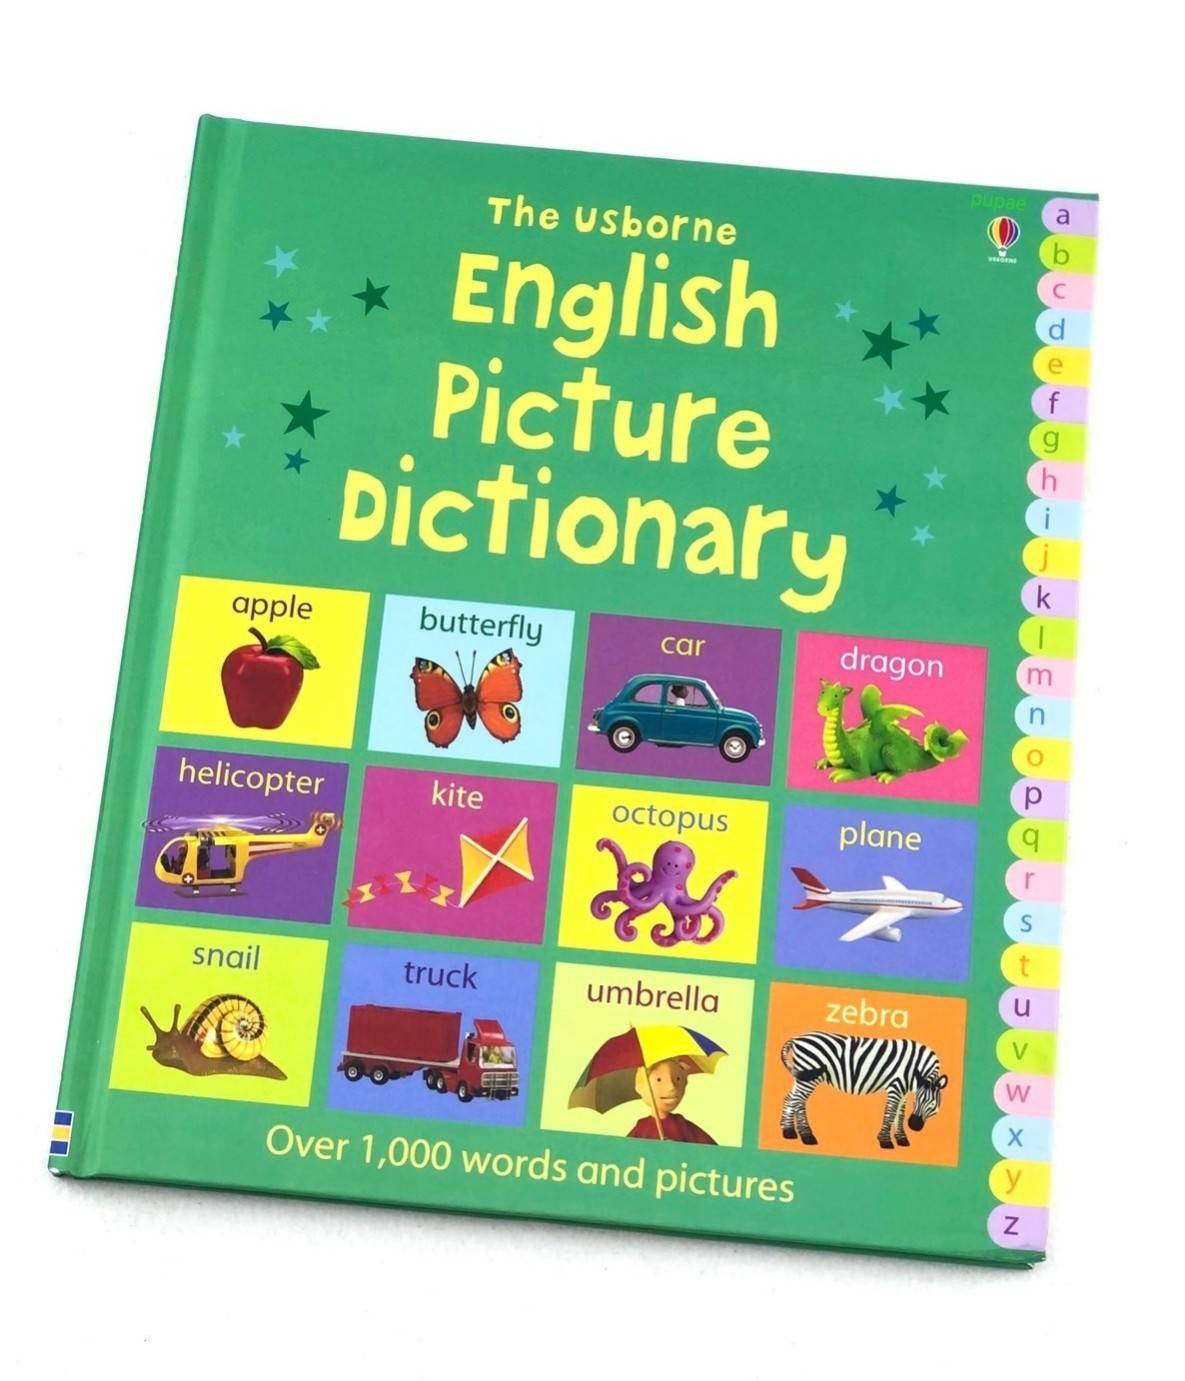 The Usborne English Picture Dictionary” หนังสือภาพพจนานุกรมคำศัพท์ ที่มีคำศัพท์ พื้นฐาน มากกว่า 1,000 คำ หนังสือเด็ก หนังสือภาษาอังกฤษสำหรับเด็ก